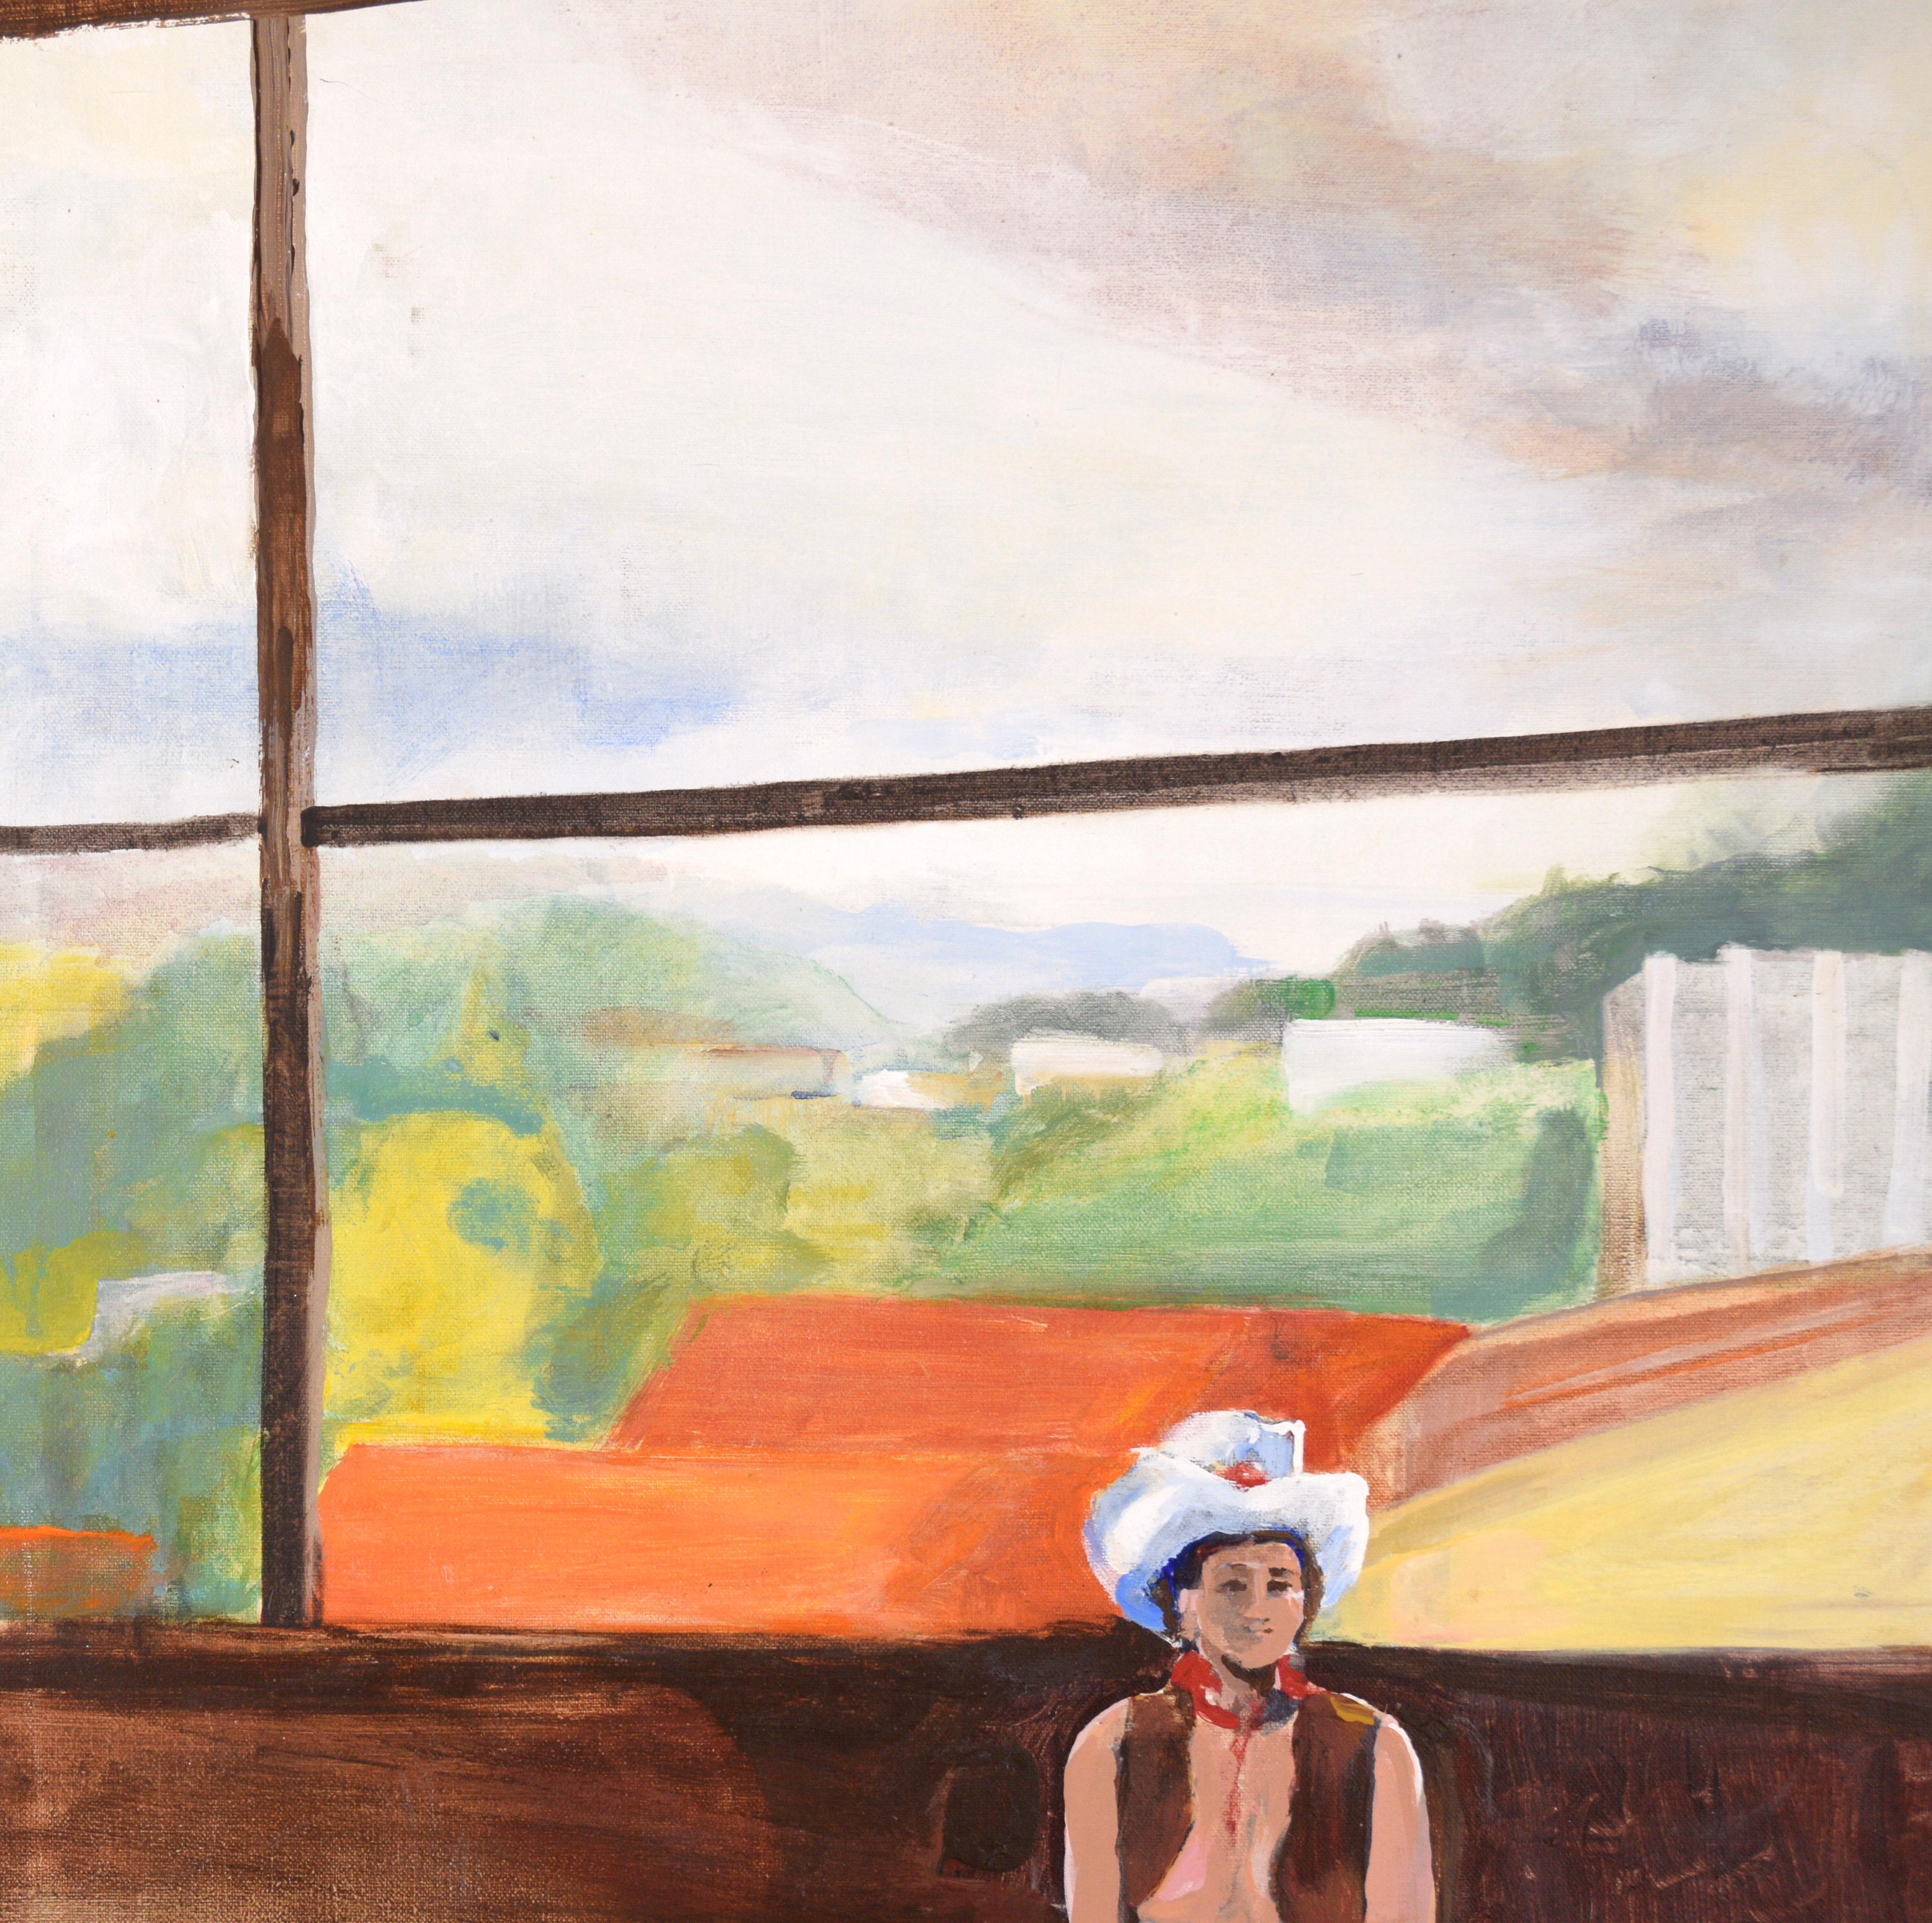 Cowgirl in the Studio - Étude figurative à l'huile sur toile - Painting de Patricia Gren Hayes